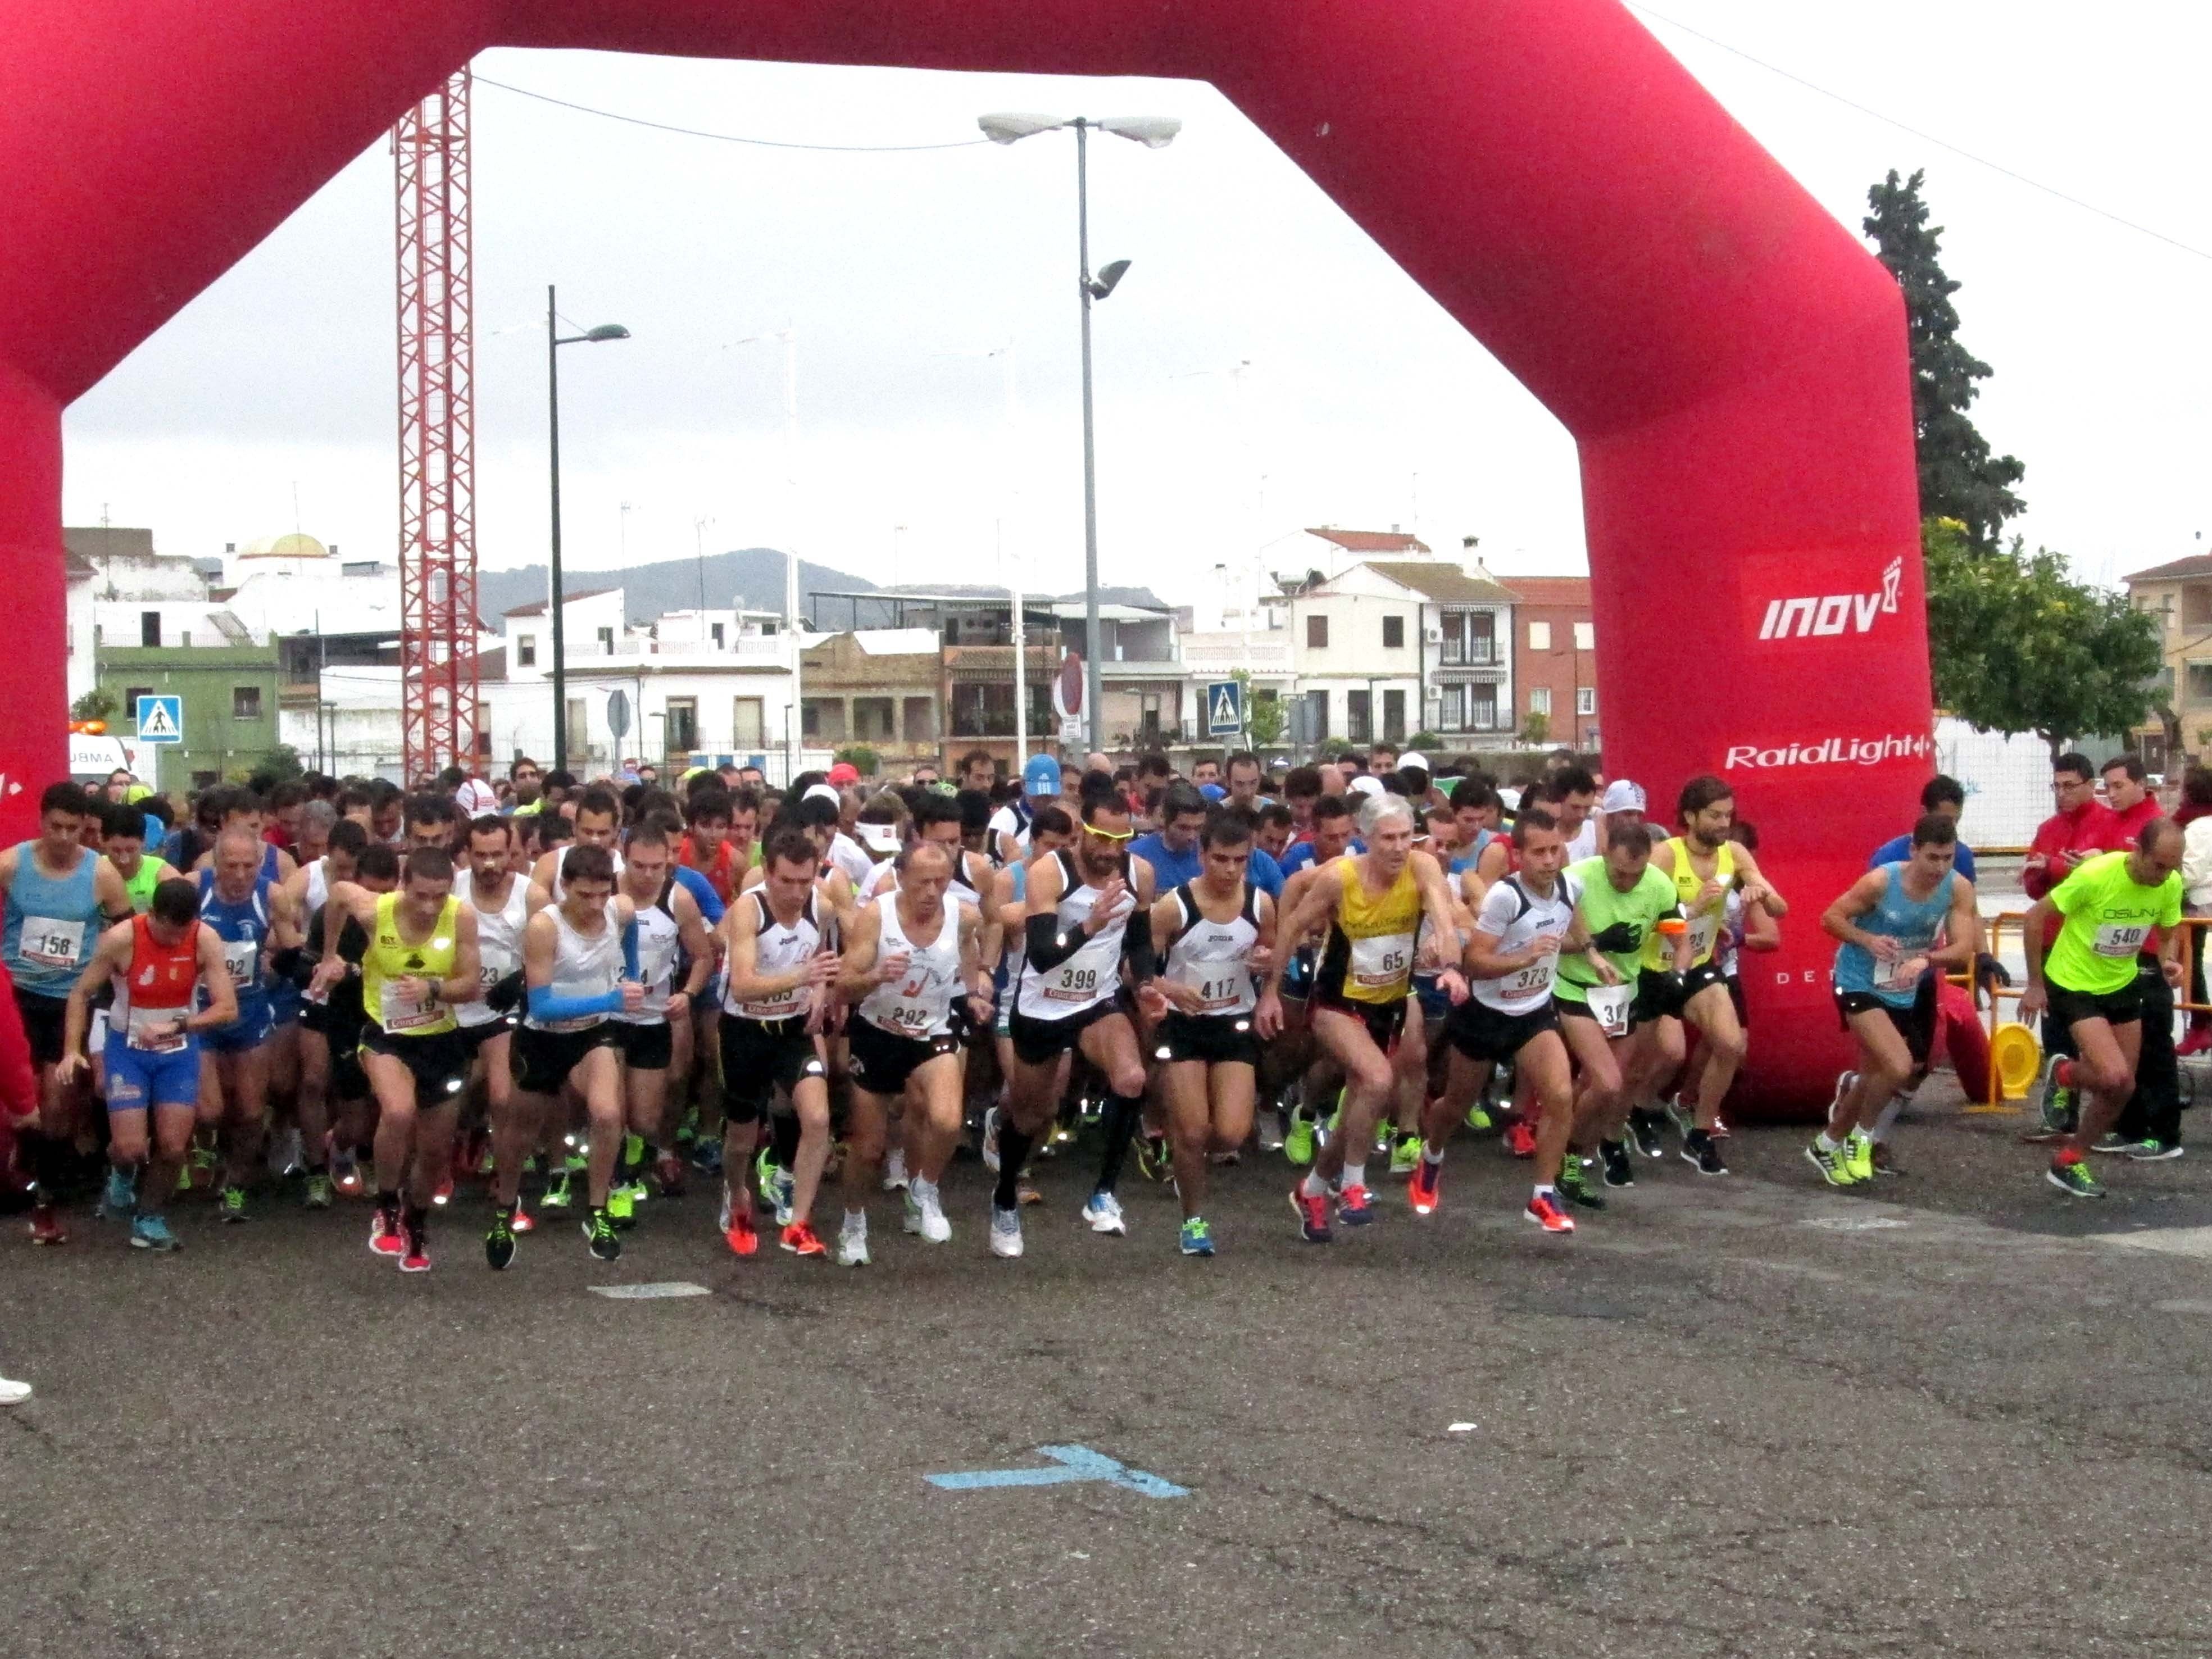  Puente Genil: Más de 600 corredores participan en el "Medio Maratón" 